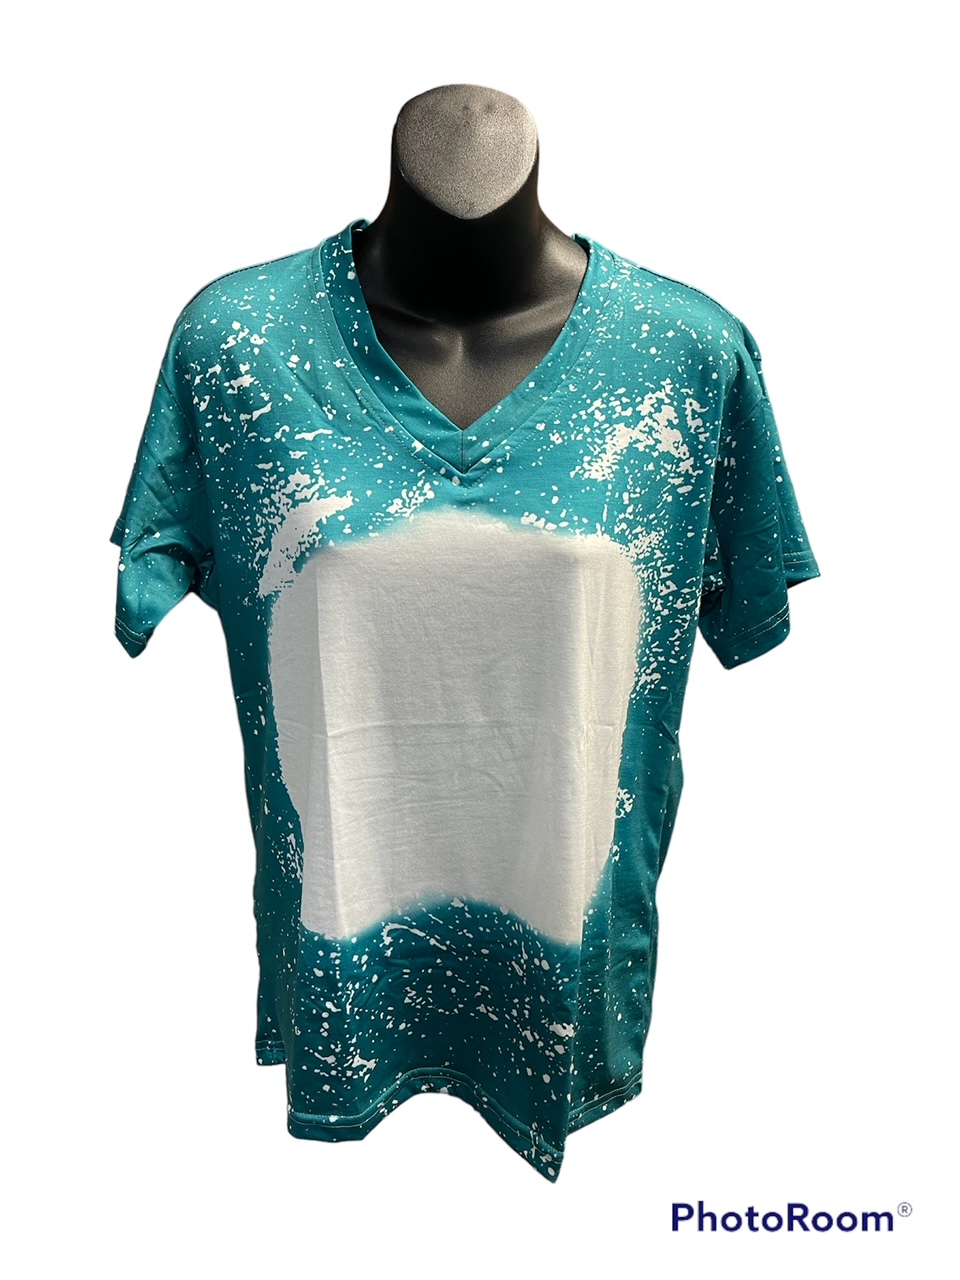 Turquoise Splash Short Sleeve MEDIUM Sublimation Shirt